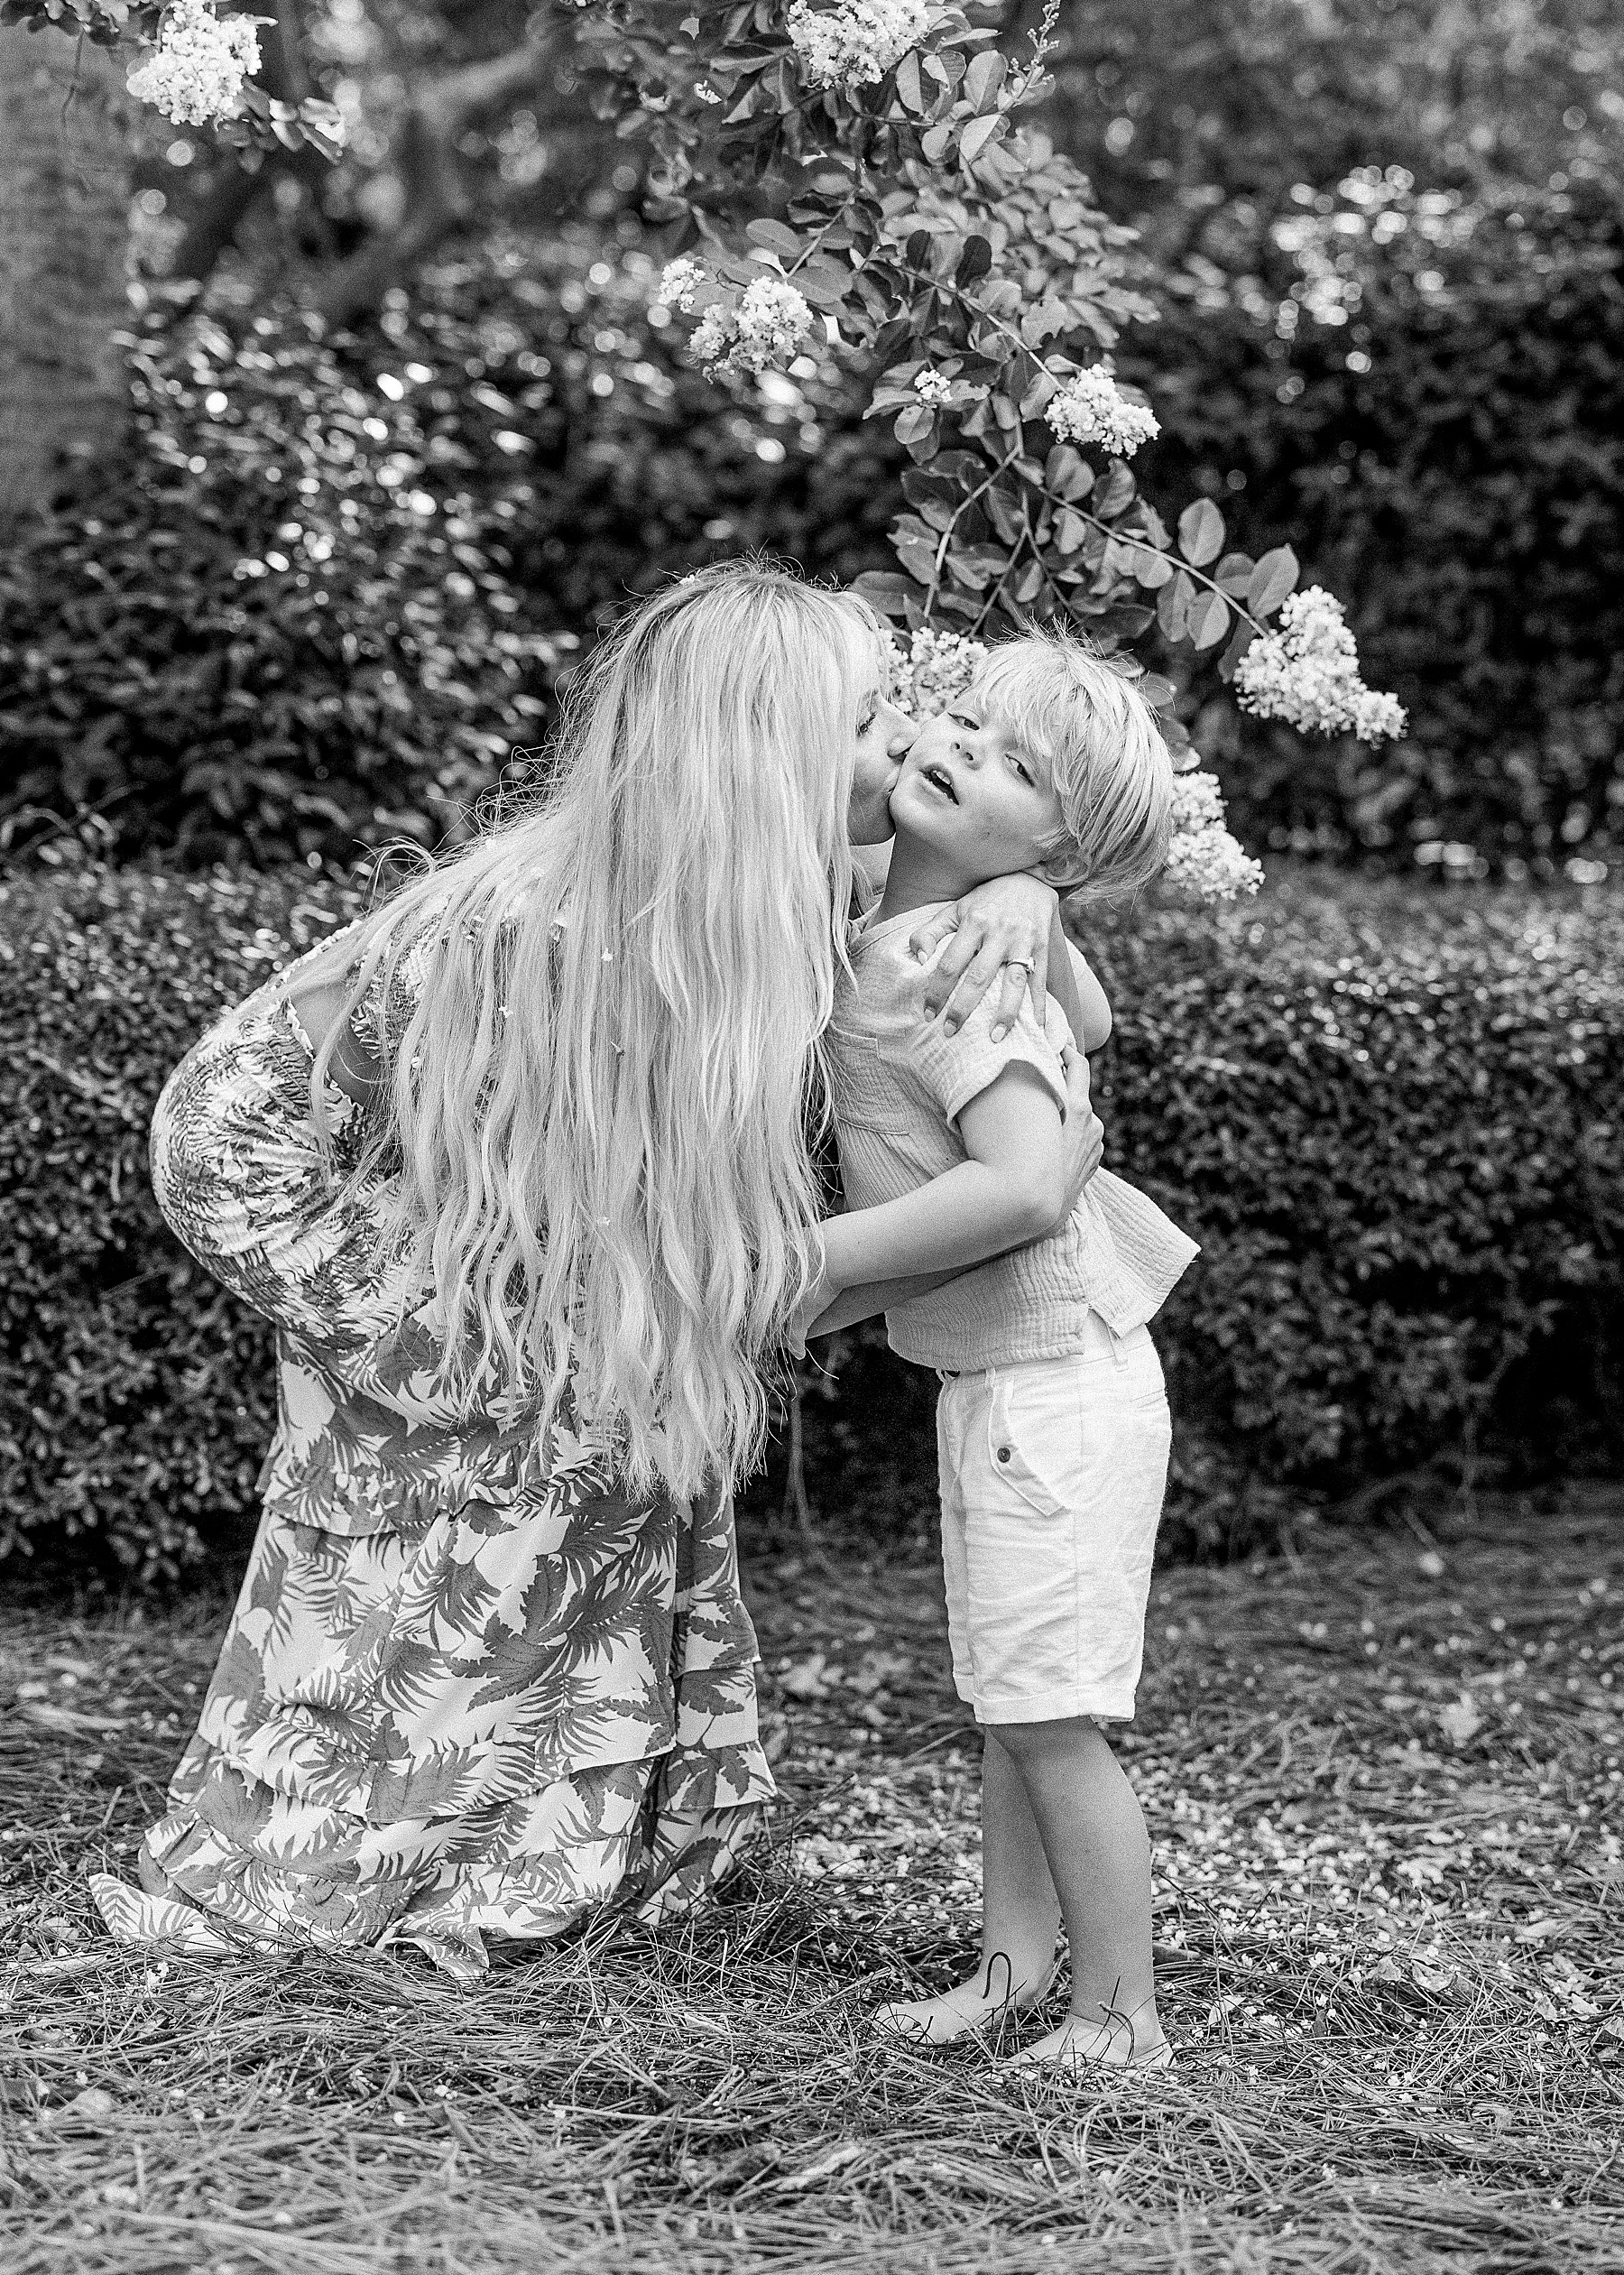 woman kissing little boy in flowers barefoot